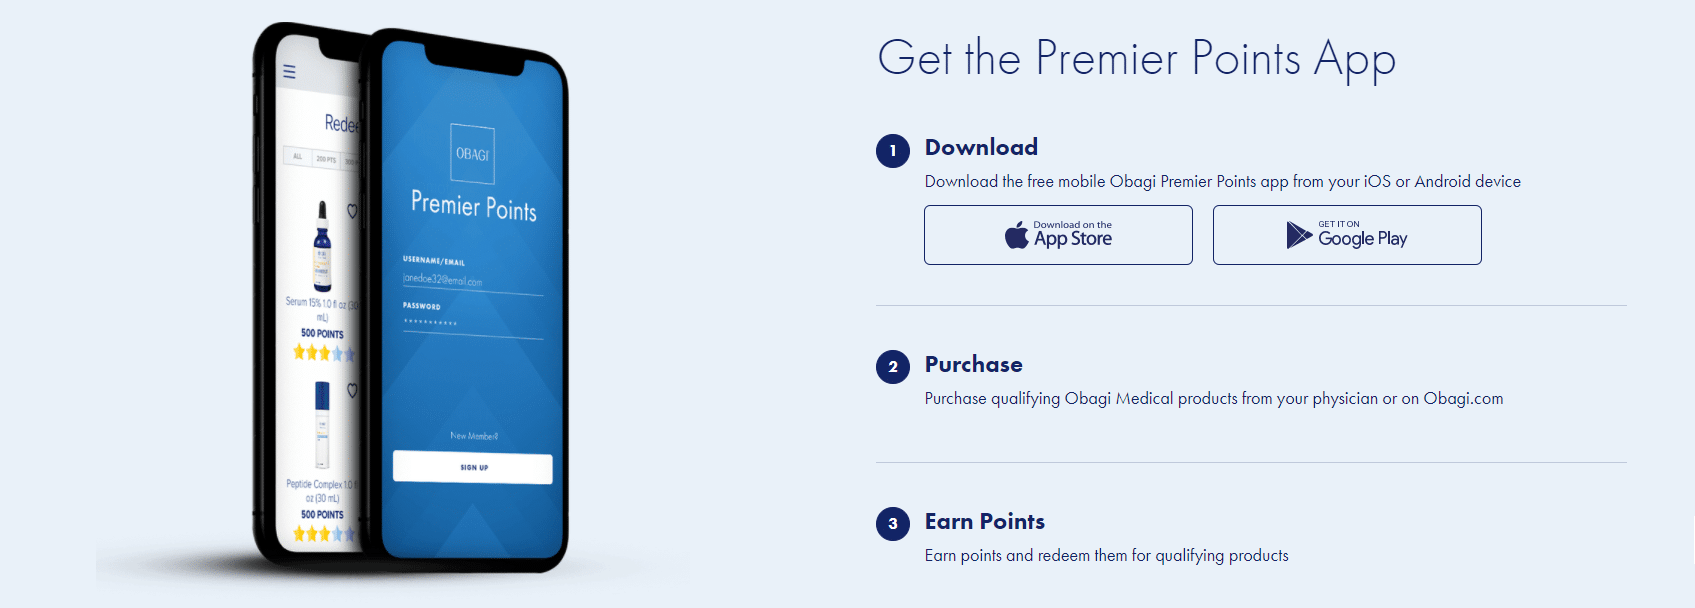 Get the Premier Points App